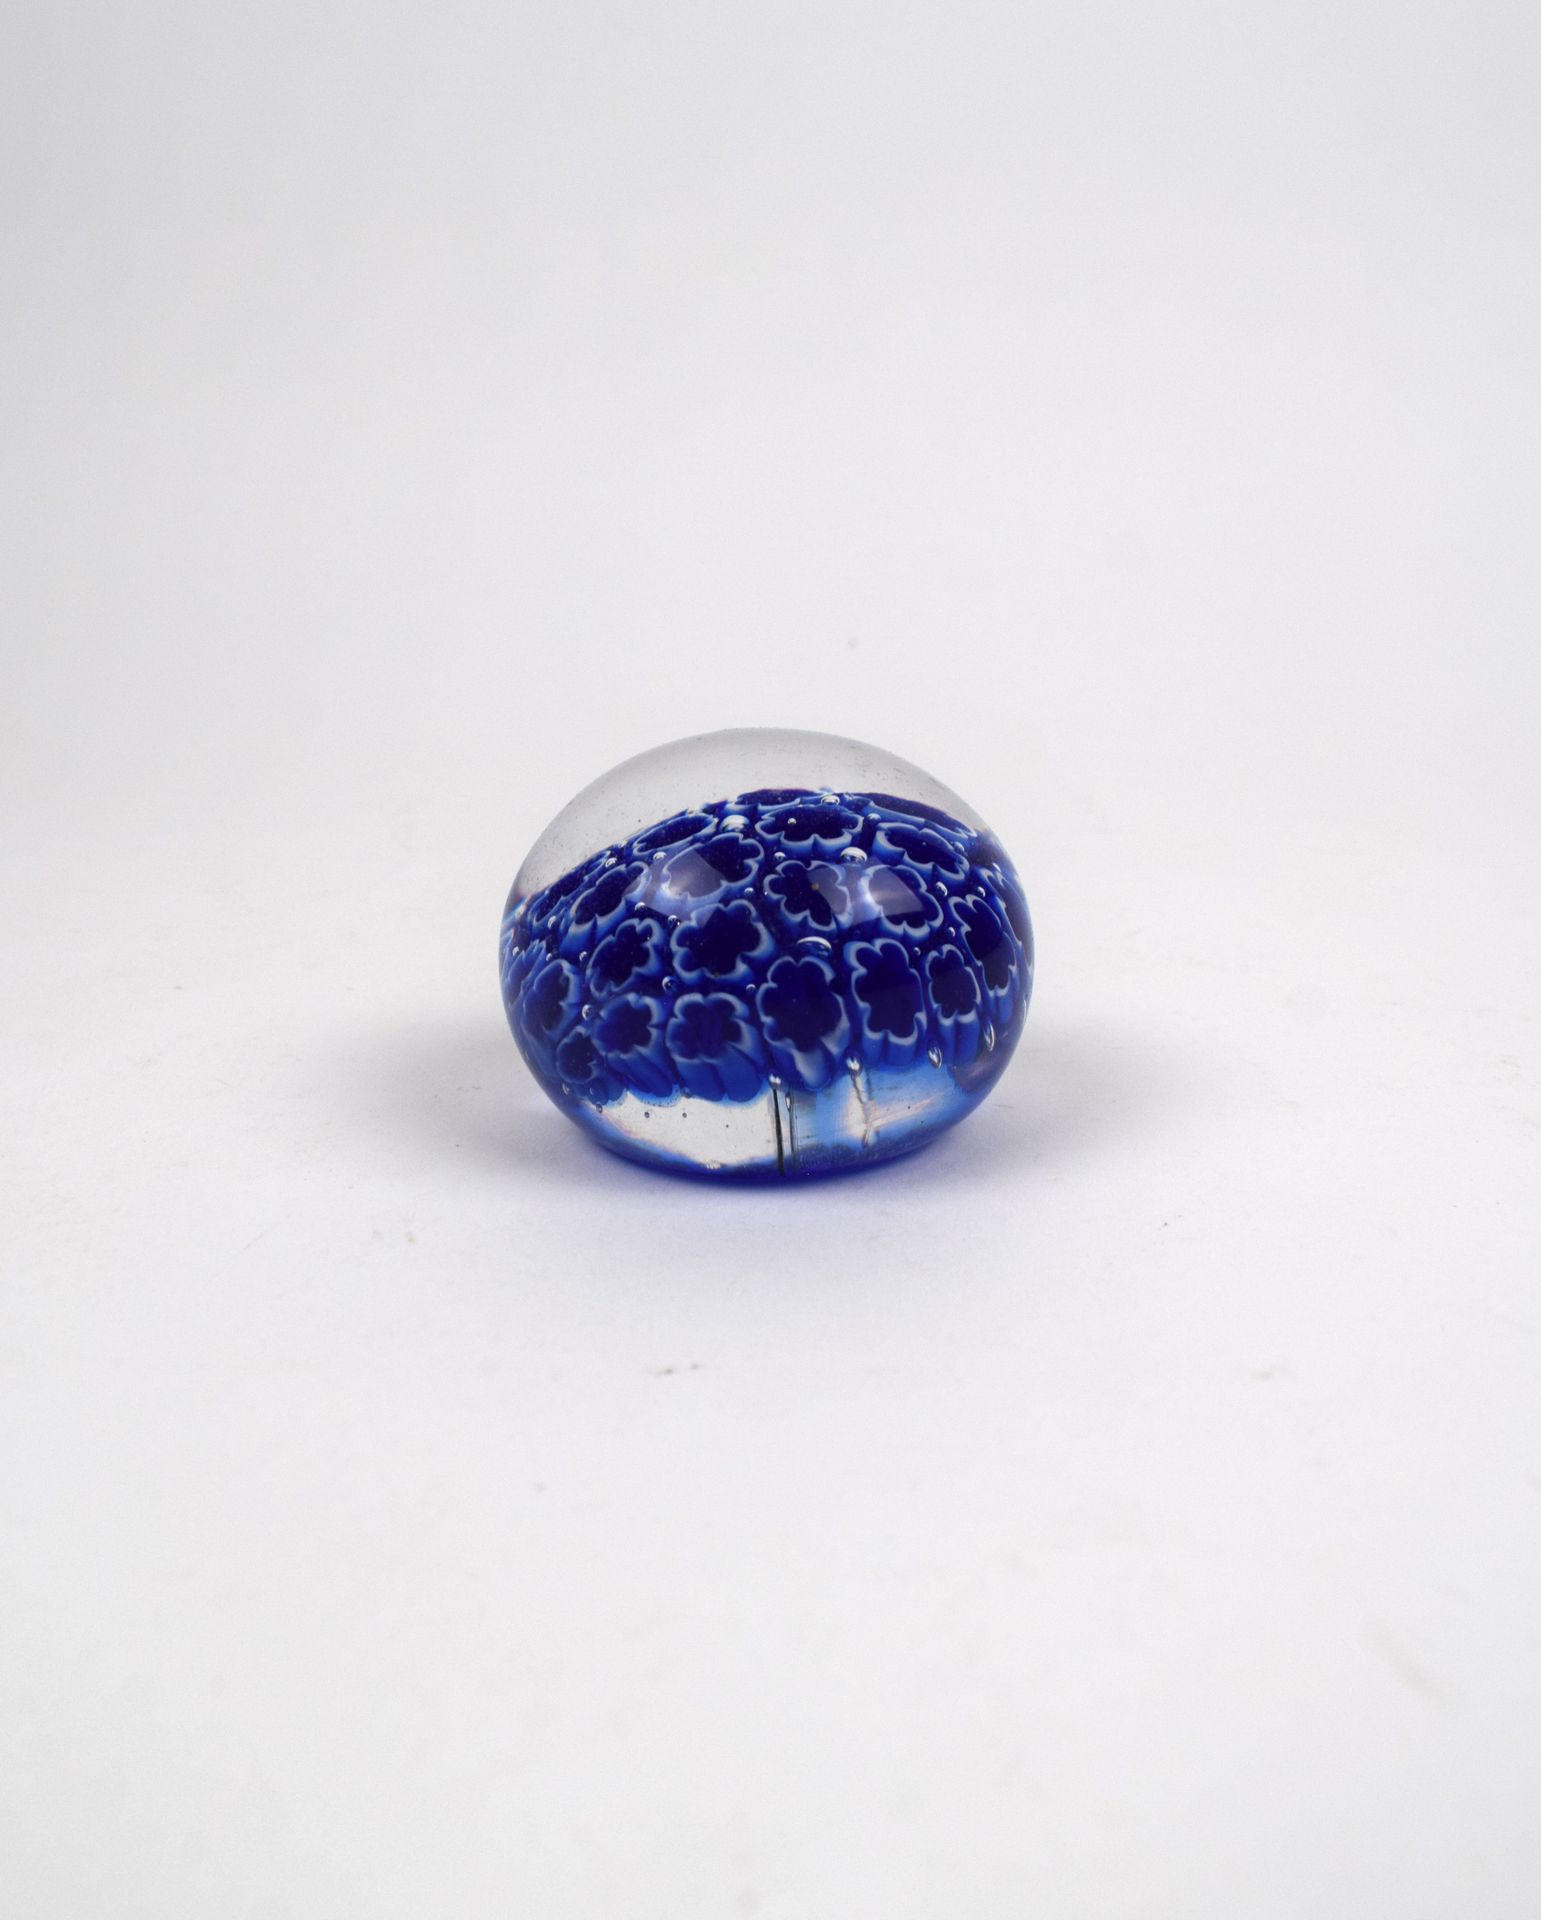 Null millefiori paperweight, blue
6 cm diameter